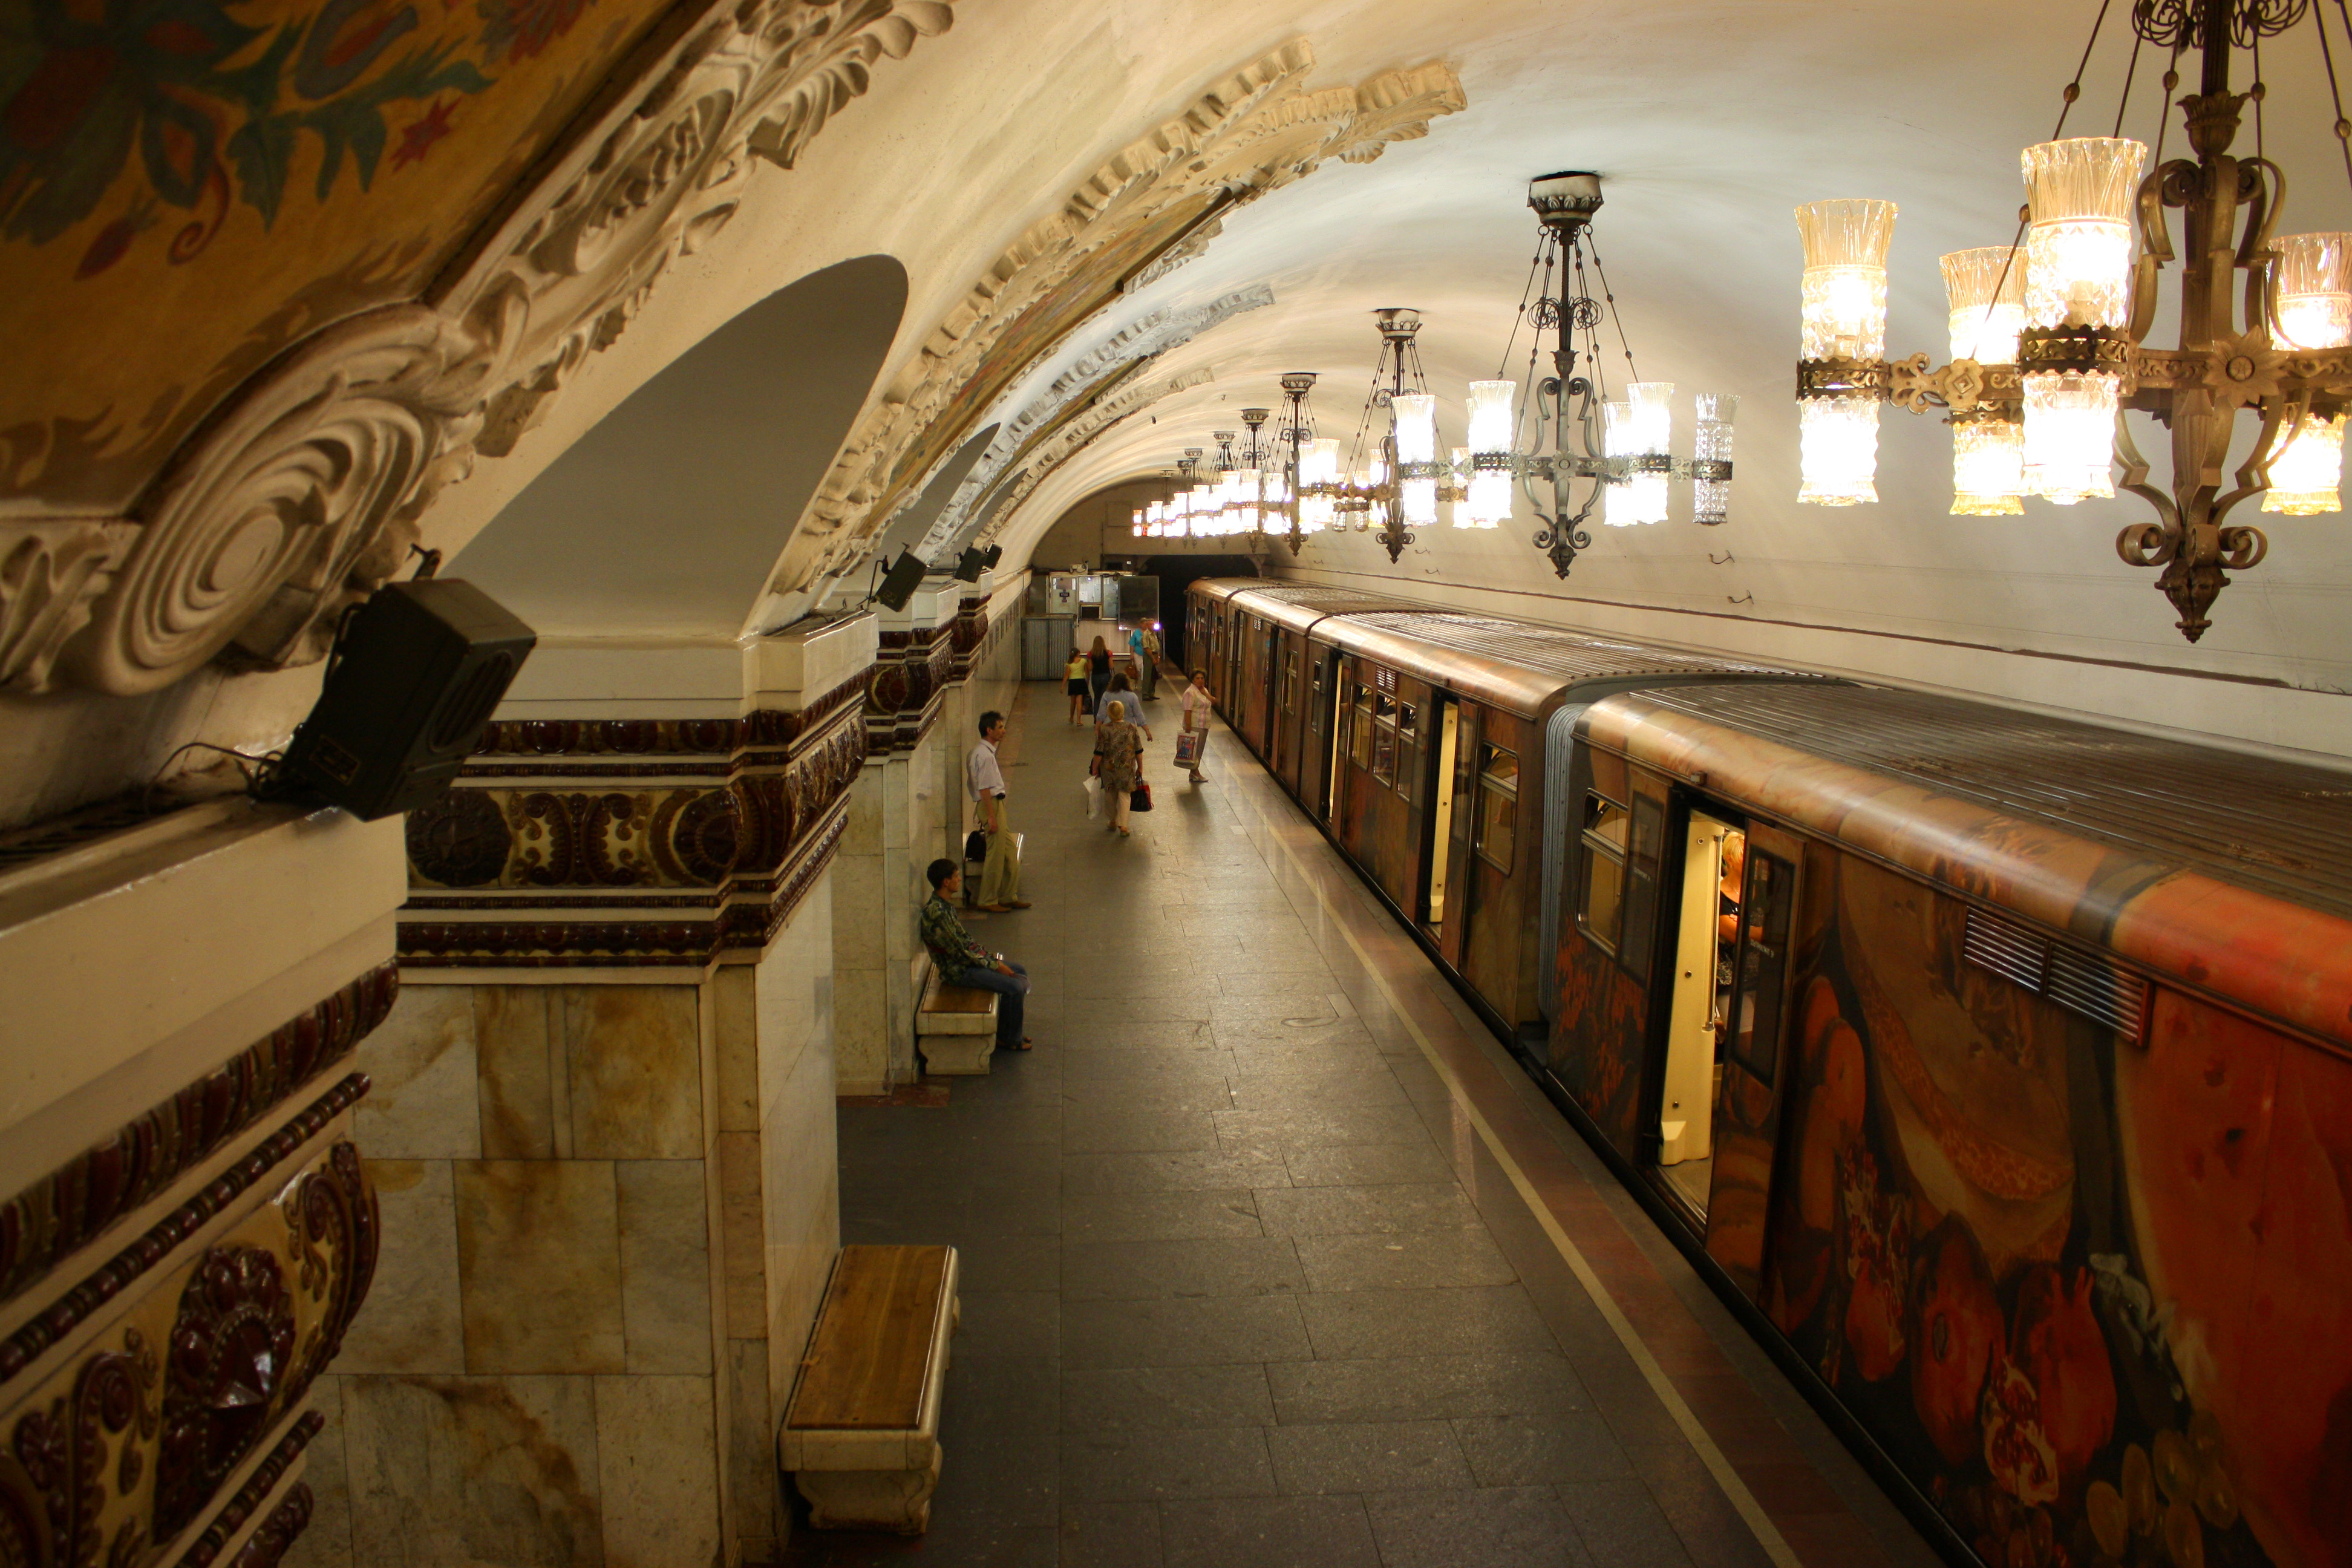 Московское метро словосочетание